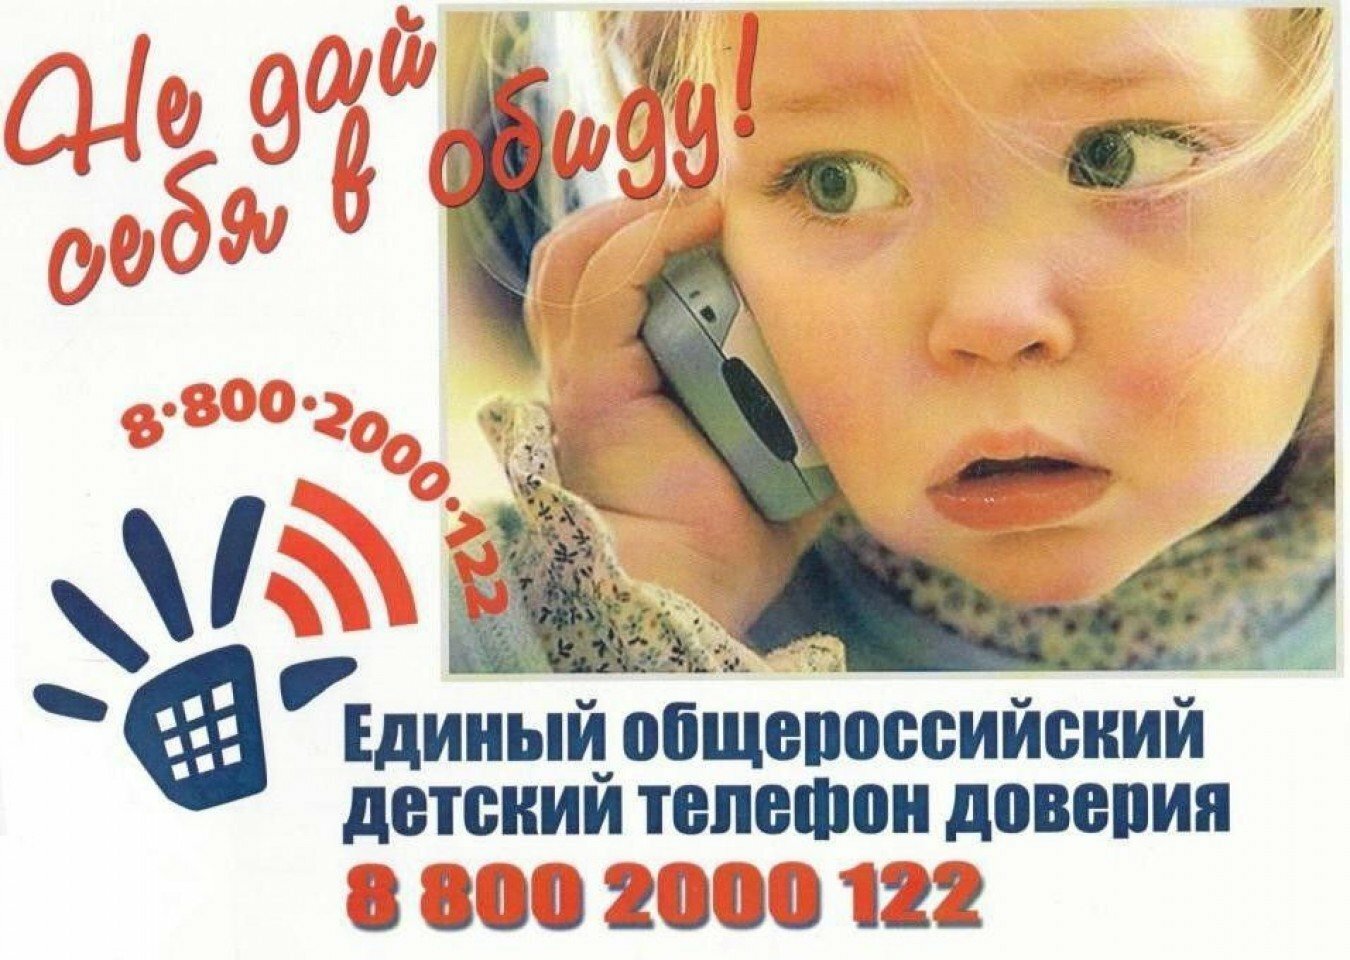 Единый телефон доверия для детей, подростков и их родителей